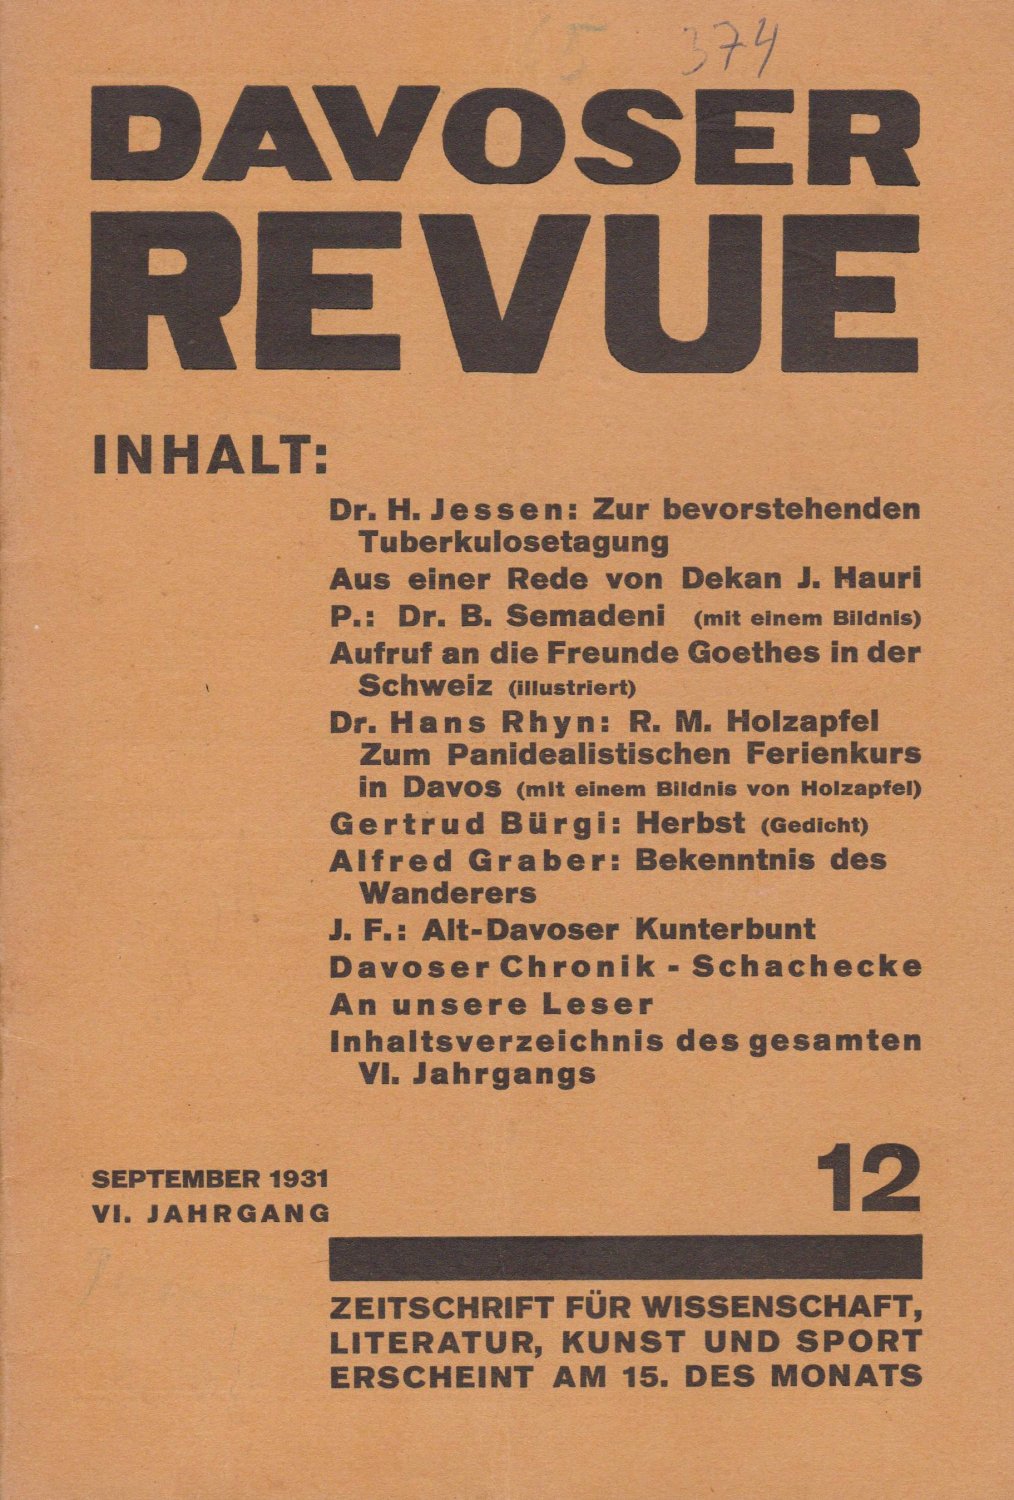   Davoser Revue. VI. Jahrgang, Nummer 12, September 1931. Zeitschrift für Literatur, Wissenschaft, Kunst und Sport. 